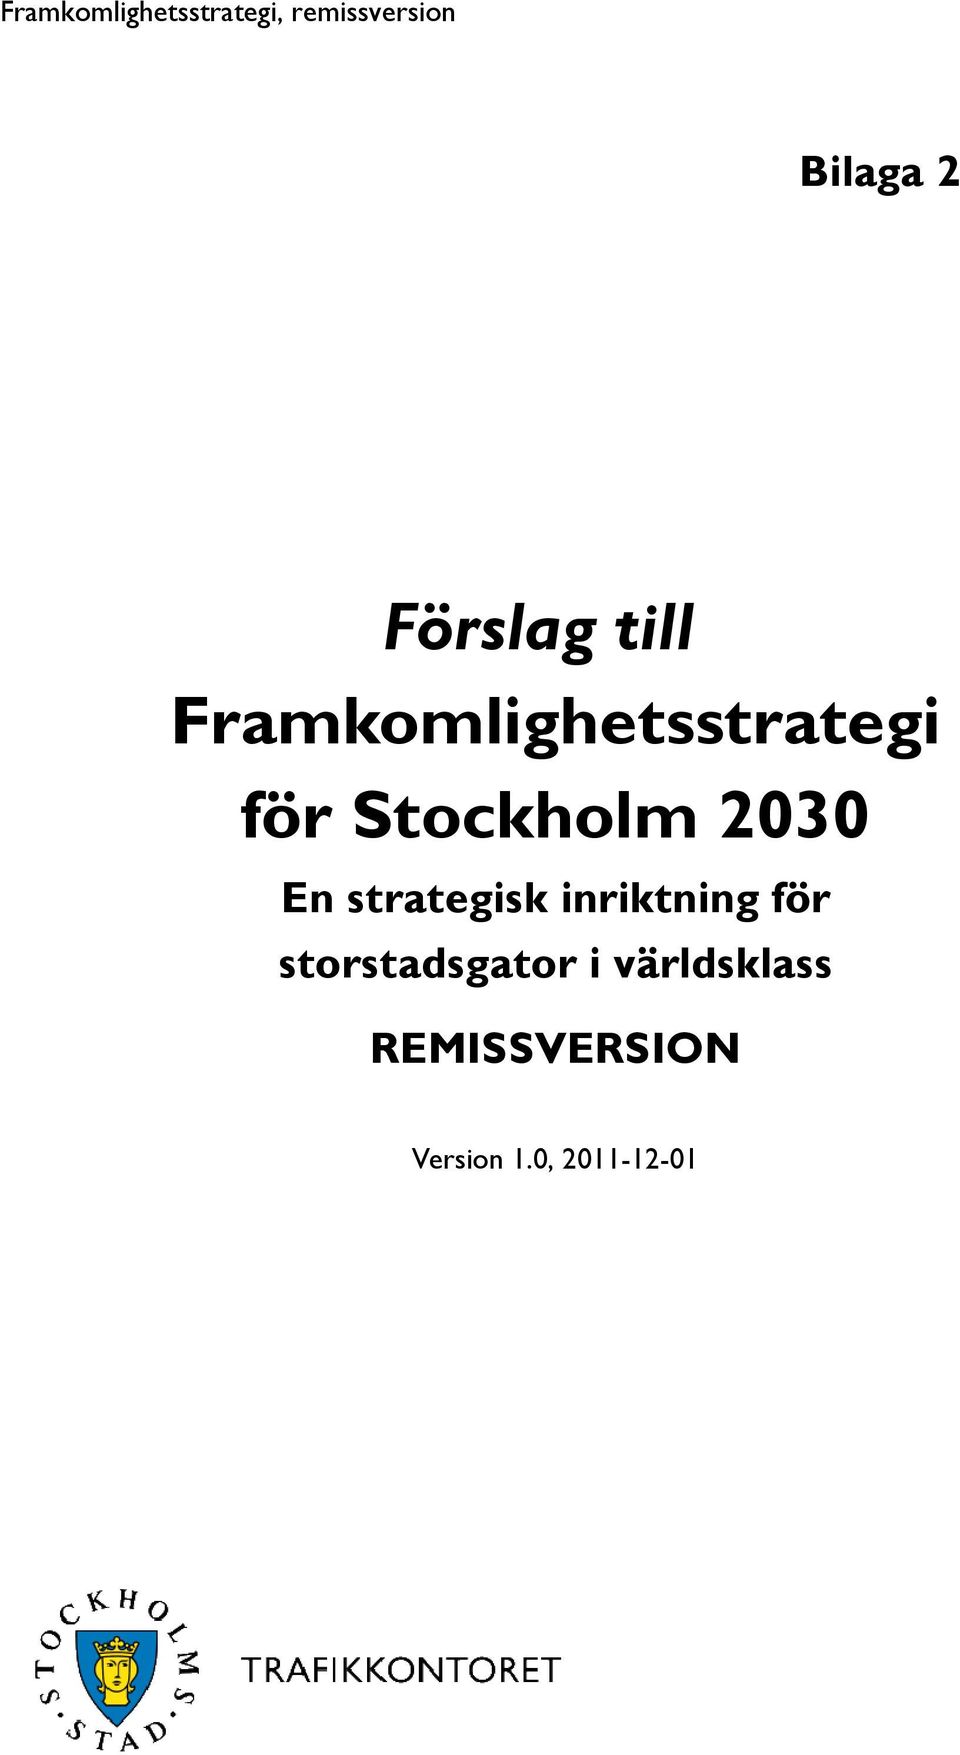 2030 En strategisk inriktning för